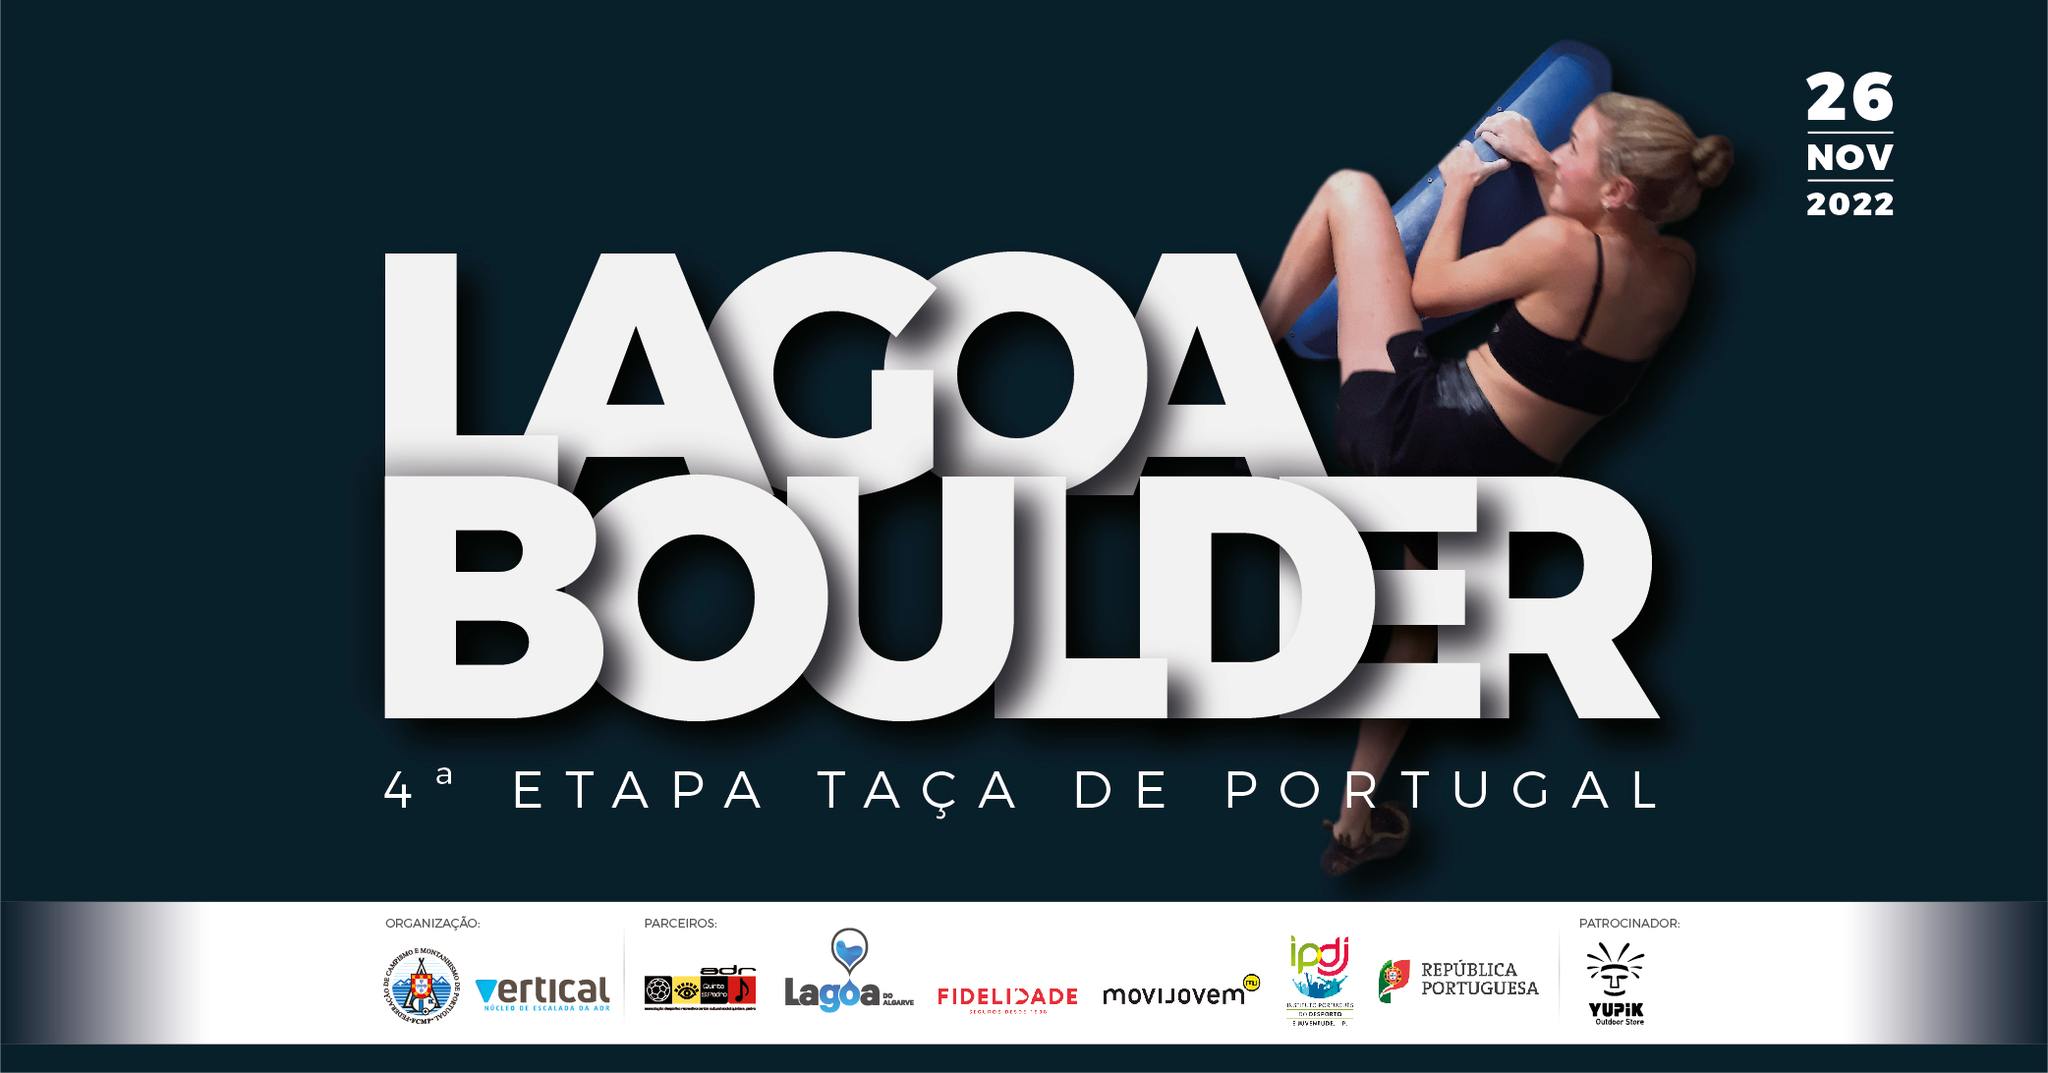 LAGOA BOULDER - Taça de Portugal